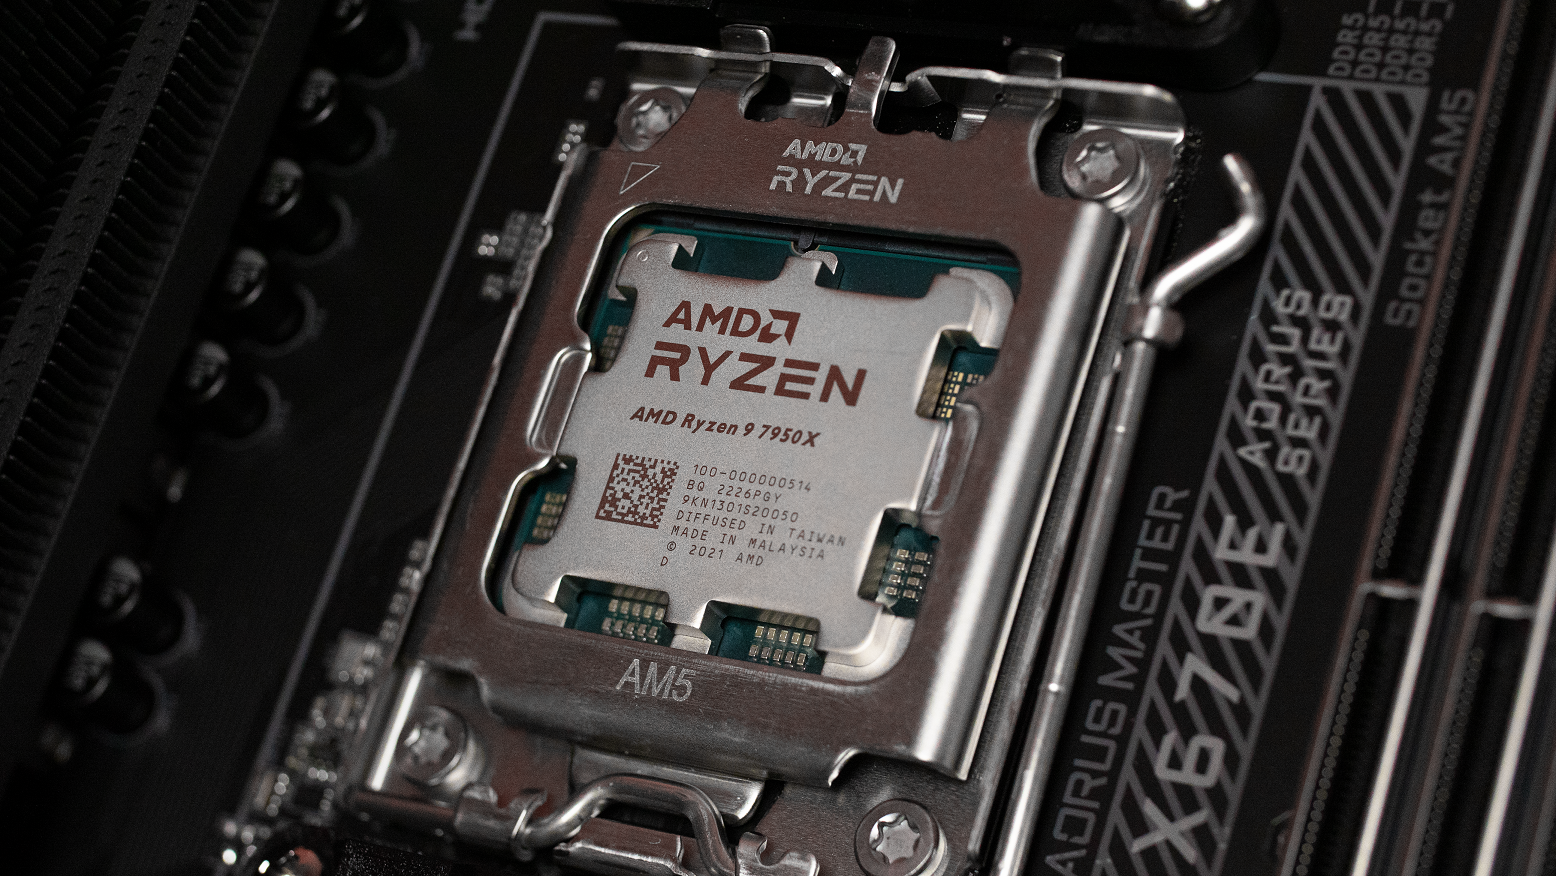 Tips before splurging for an AMD Ryzen 7000 Upgrade